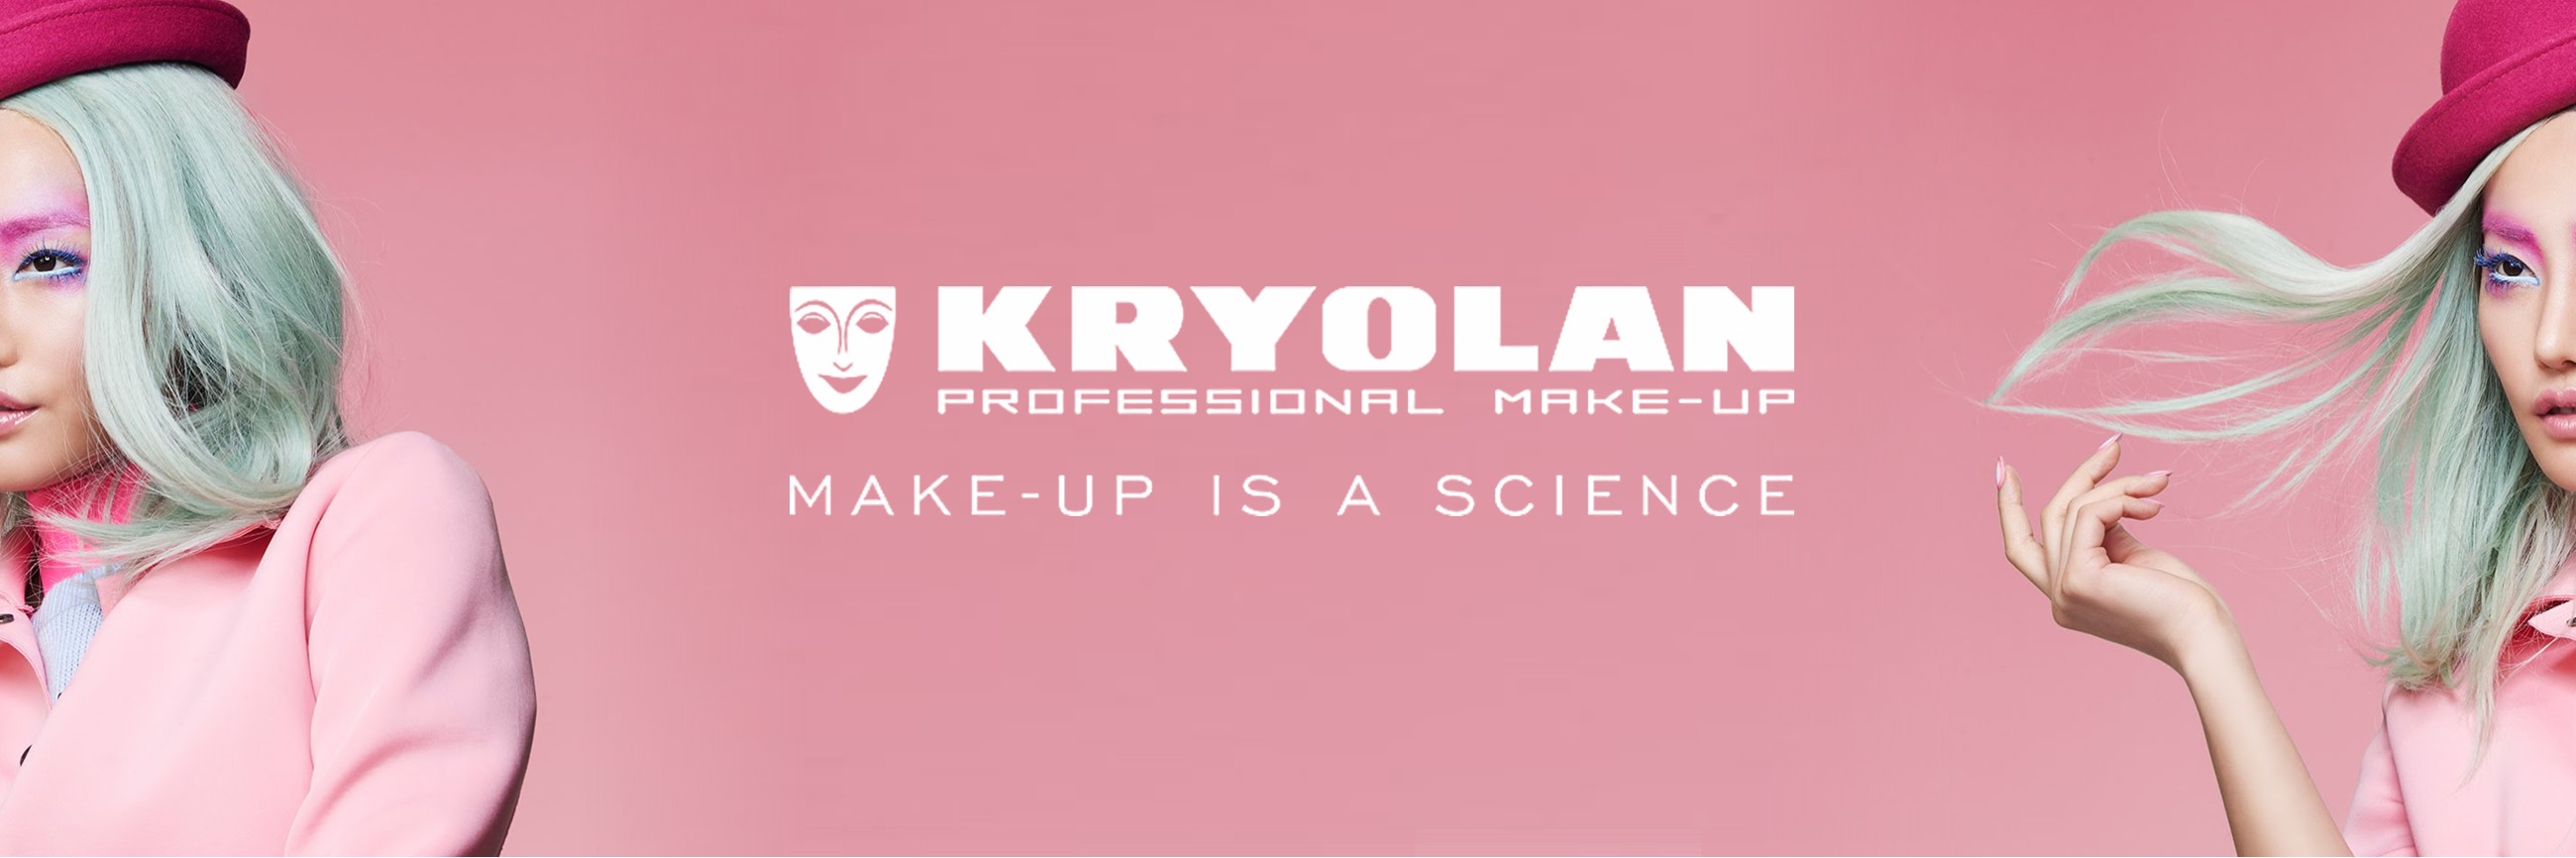 Brush Cleaner  Kryolan - Professional Make-up